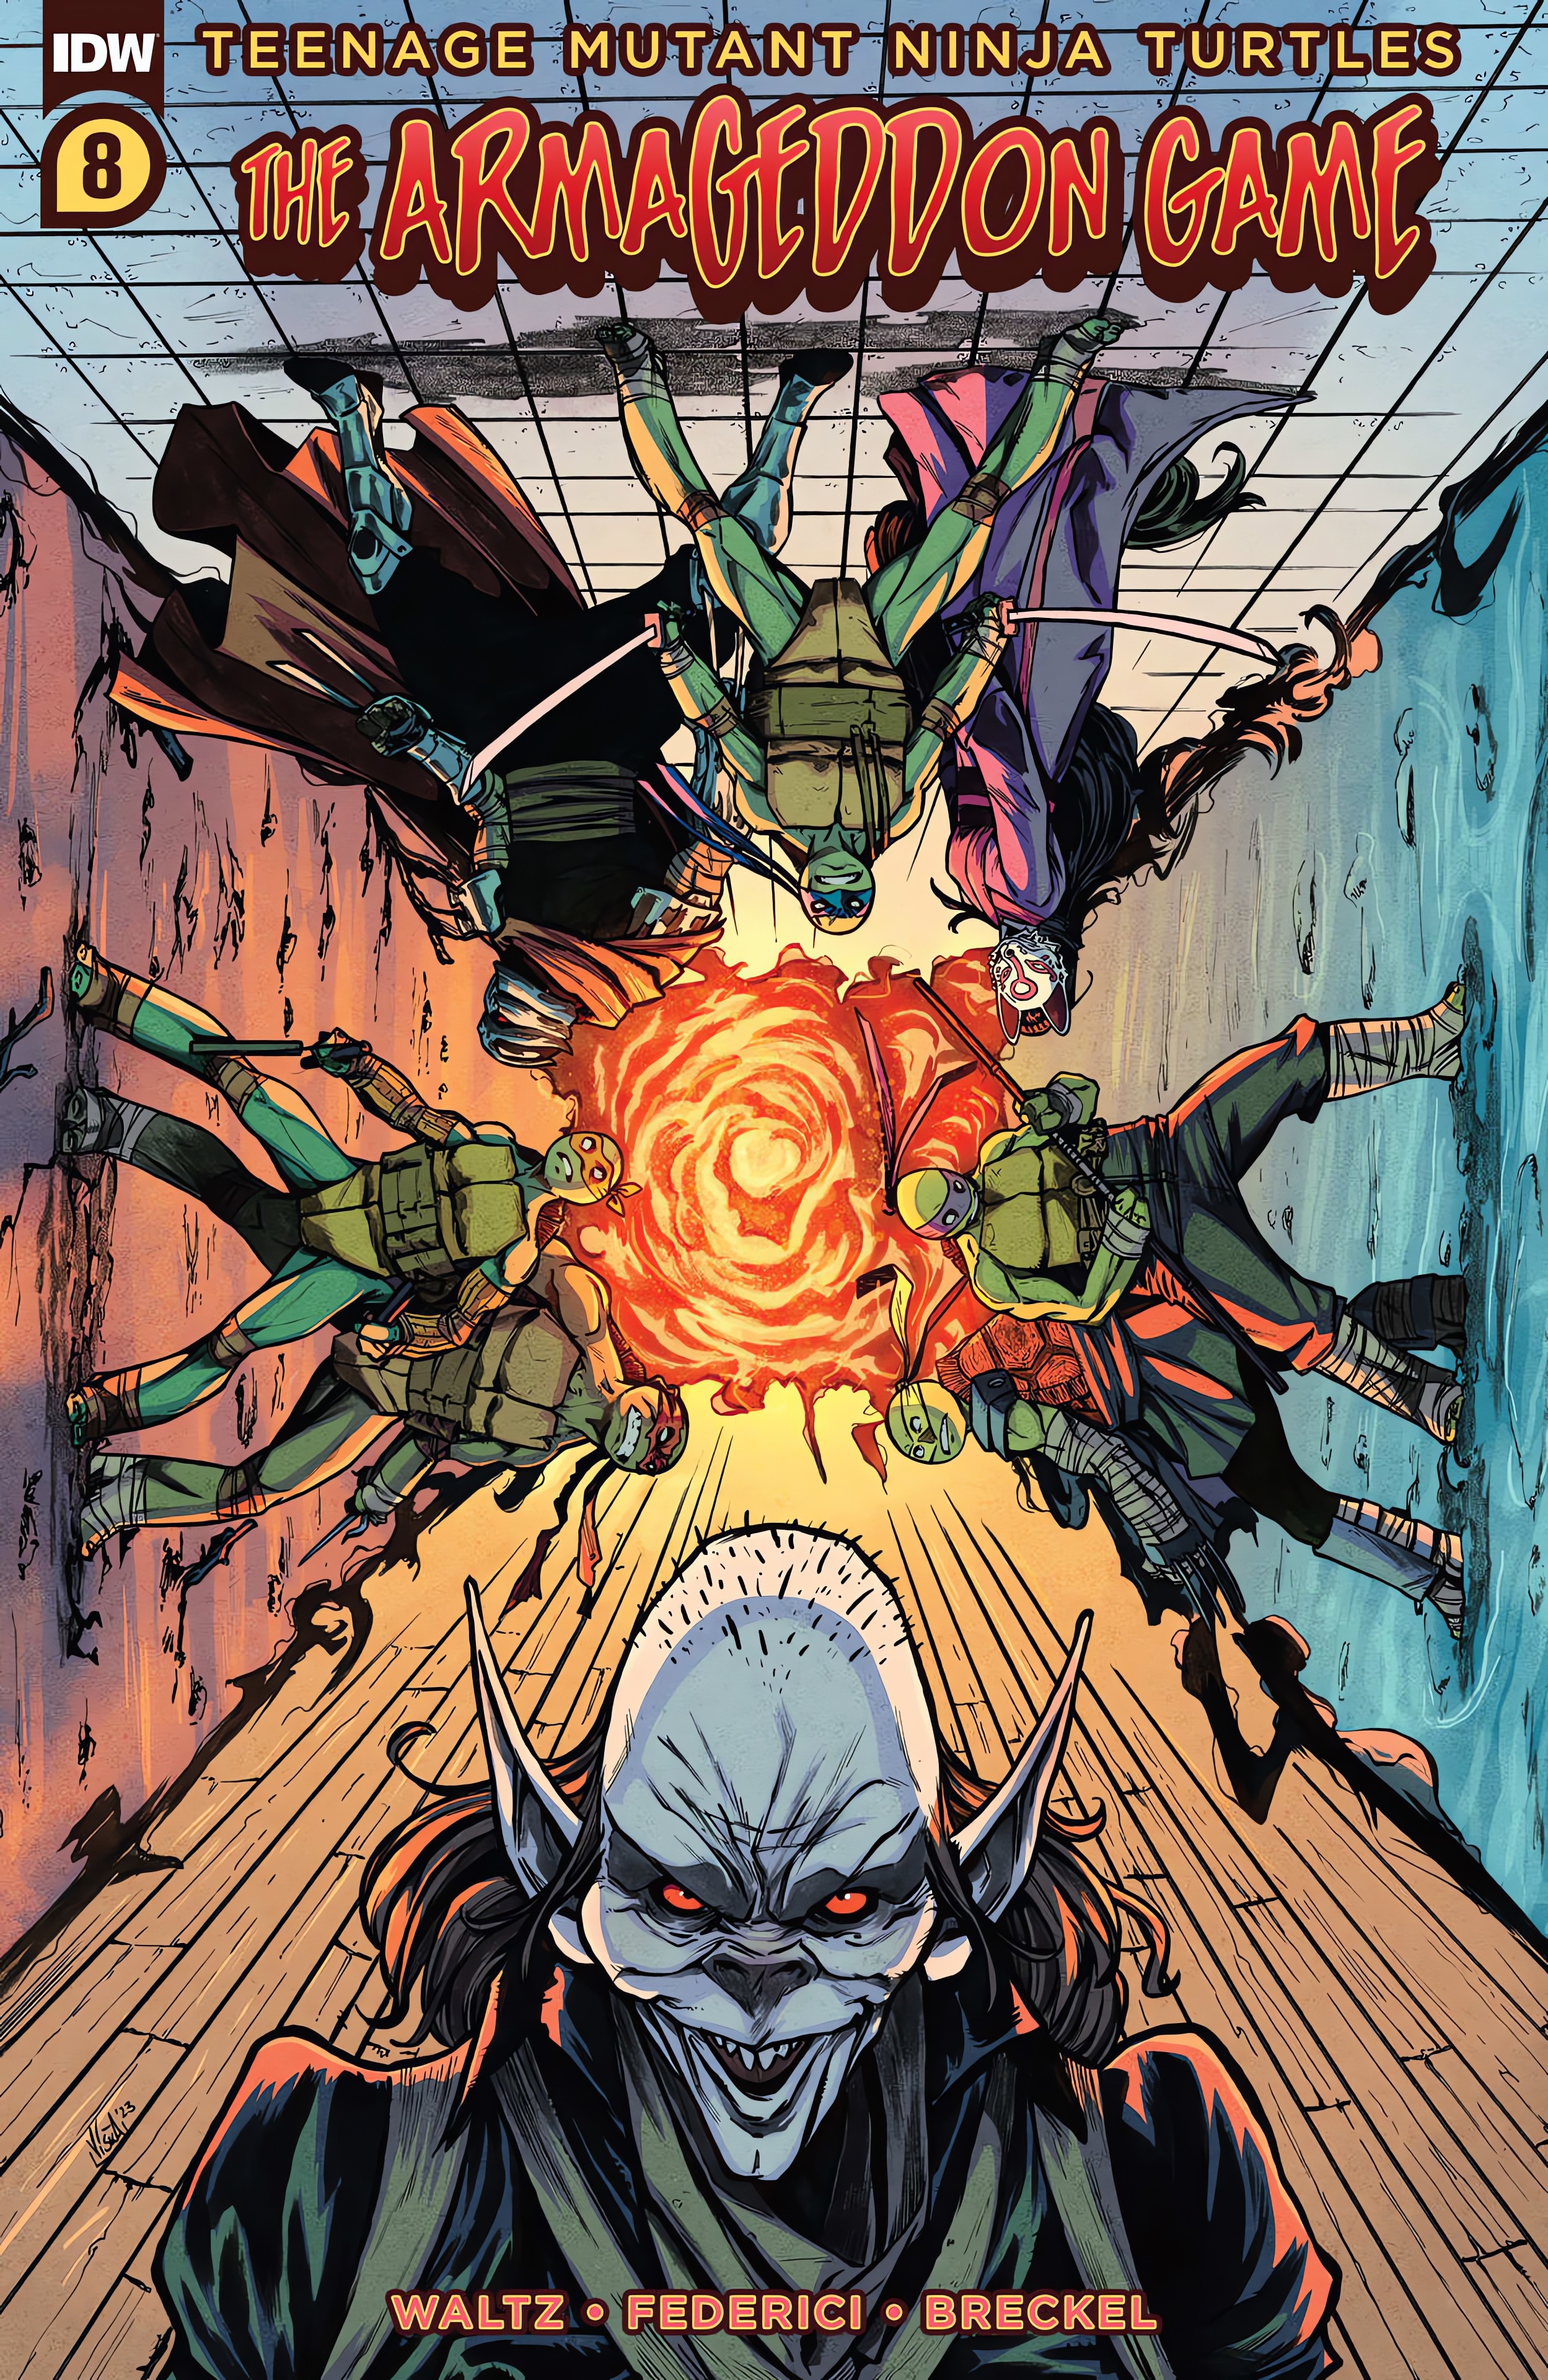 Read online Teenage Mutant Ninja Turtles: The Armageddon Game comic -  Issue #8 - 1